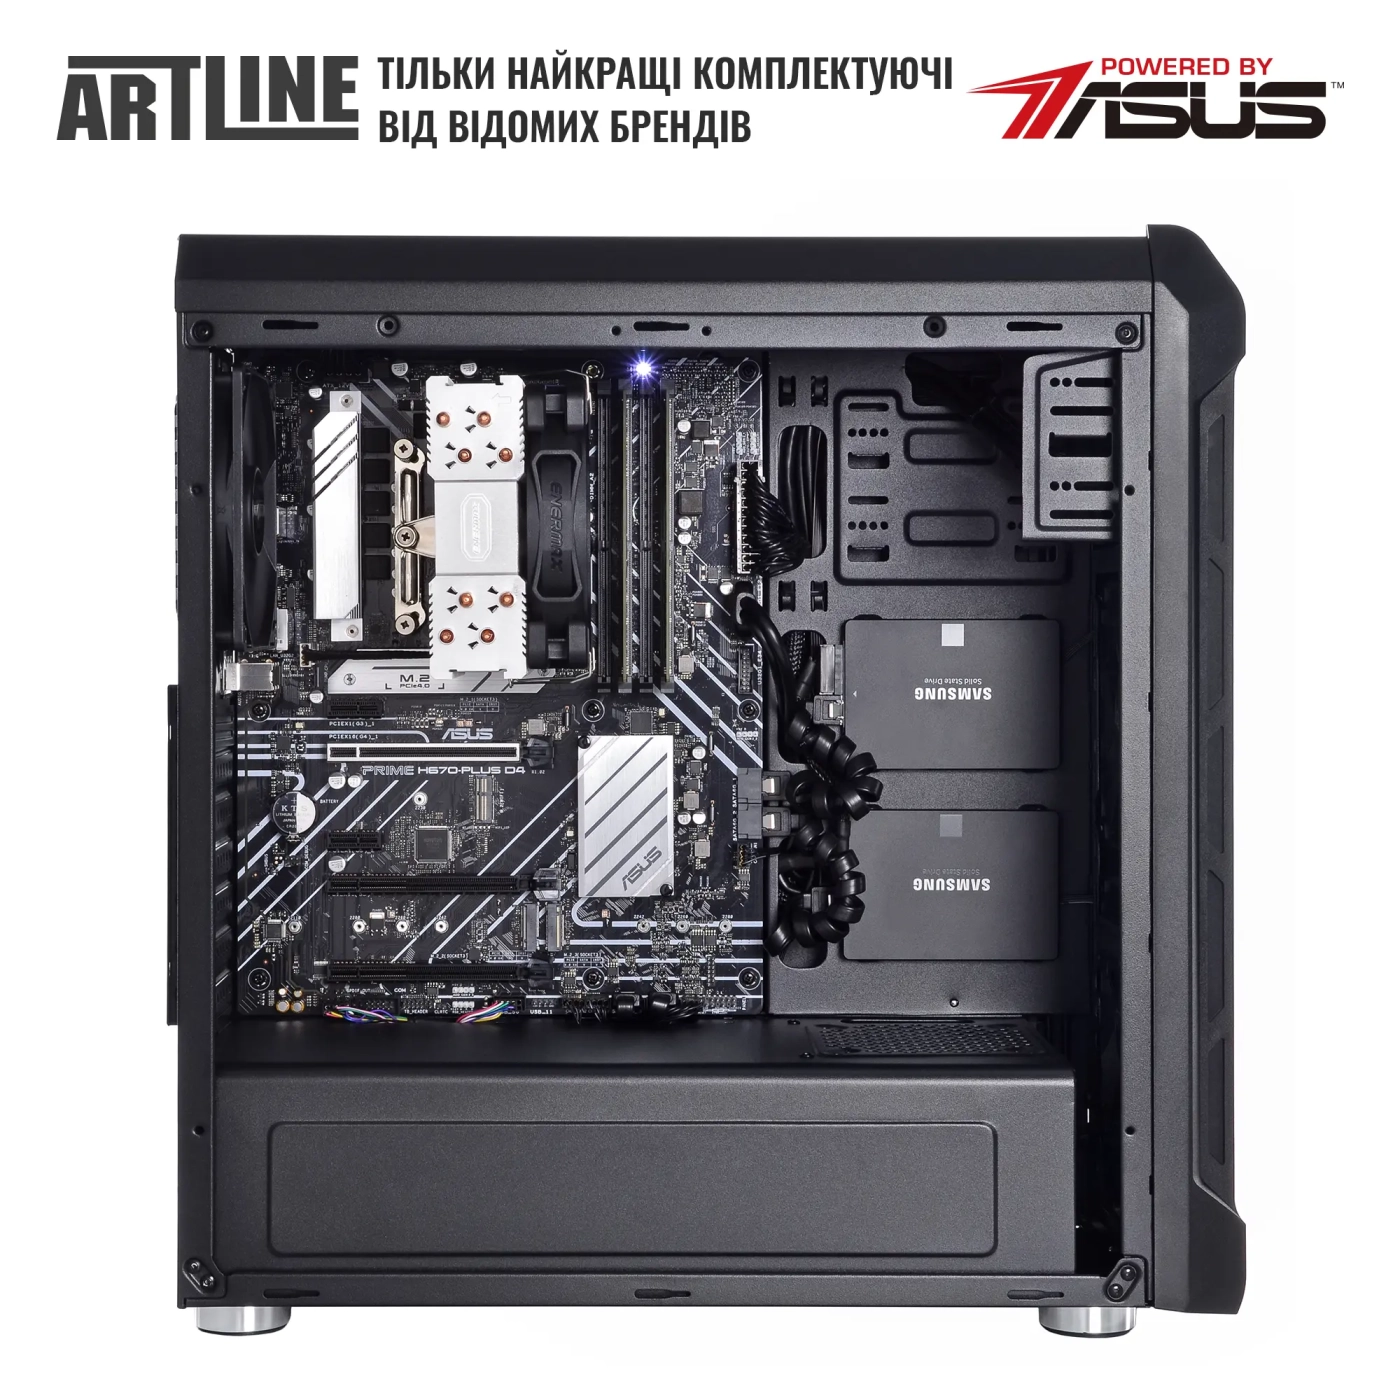 Купить Сервер ARTLINE Business T25 (T25v41) - фото 4